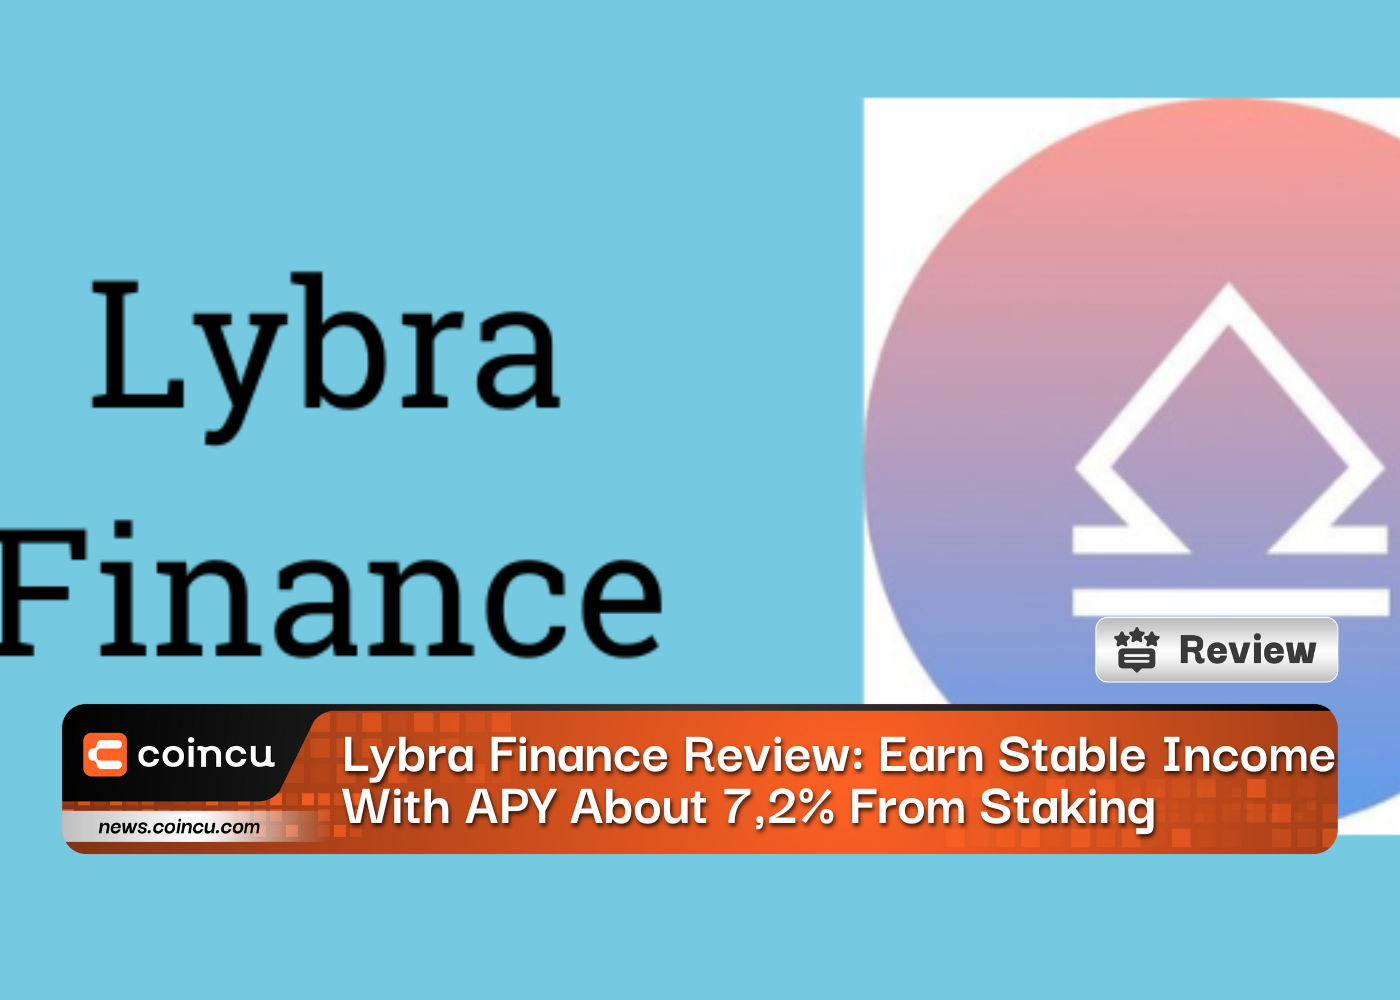 Lybra Finance Review: Erzielen Sie ein stabiles Einkommen mit APY von etwa 7,2 % aus dem Einsatz